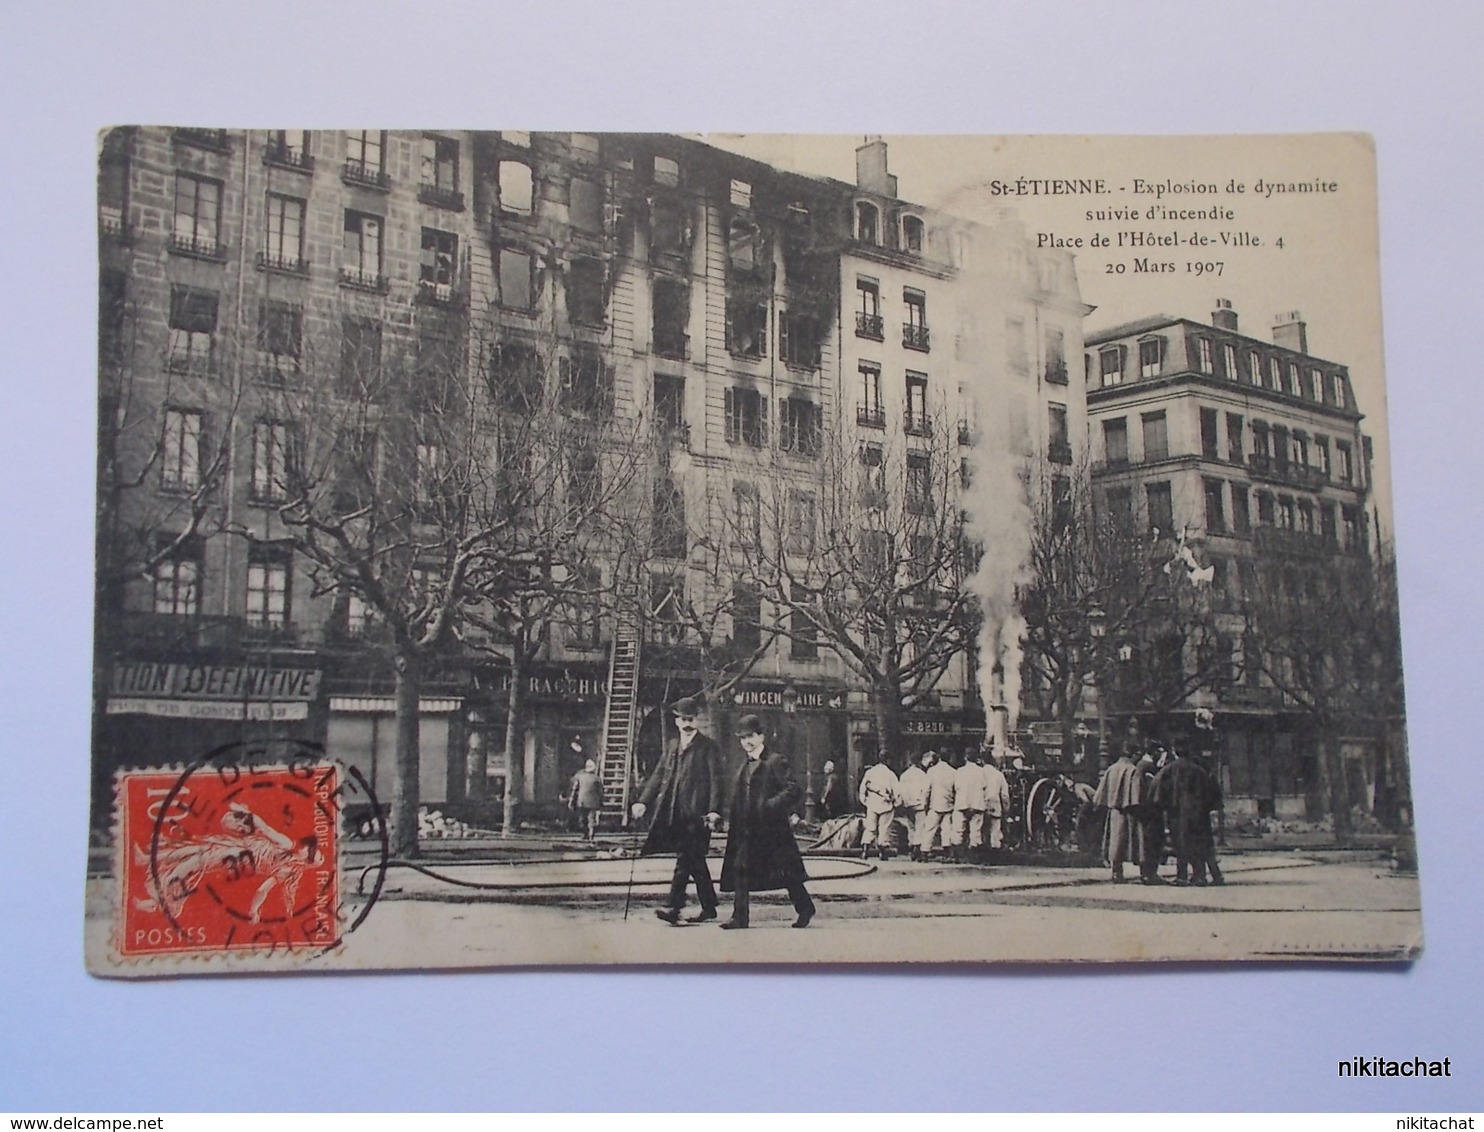 SAINT ETIENNE-Explosion De Dynamite Suivie D'incendie Place De L'hotel De Ville,20 MARS 1907 - Saint Etienne